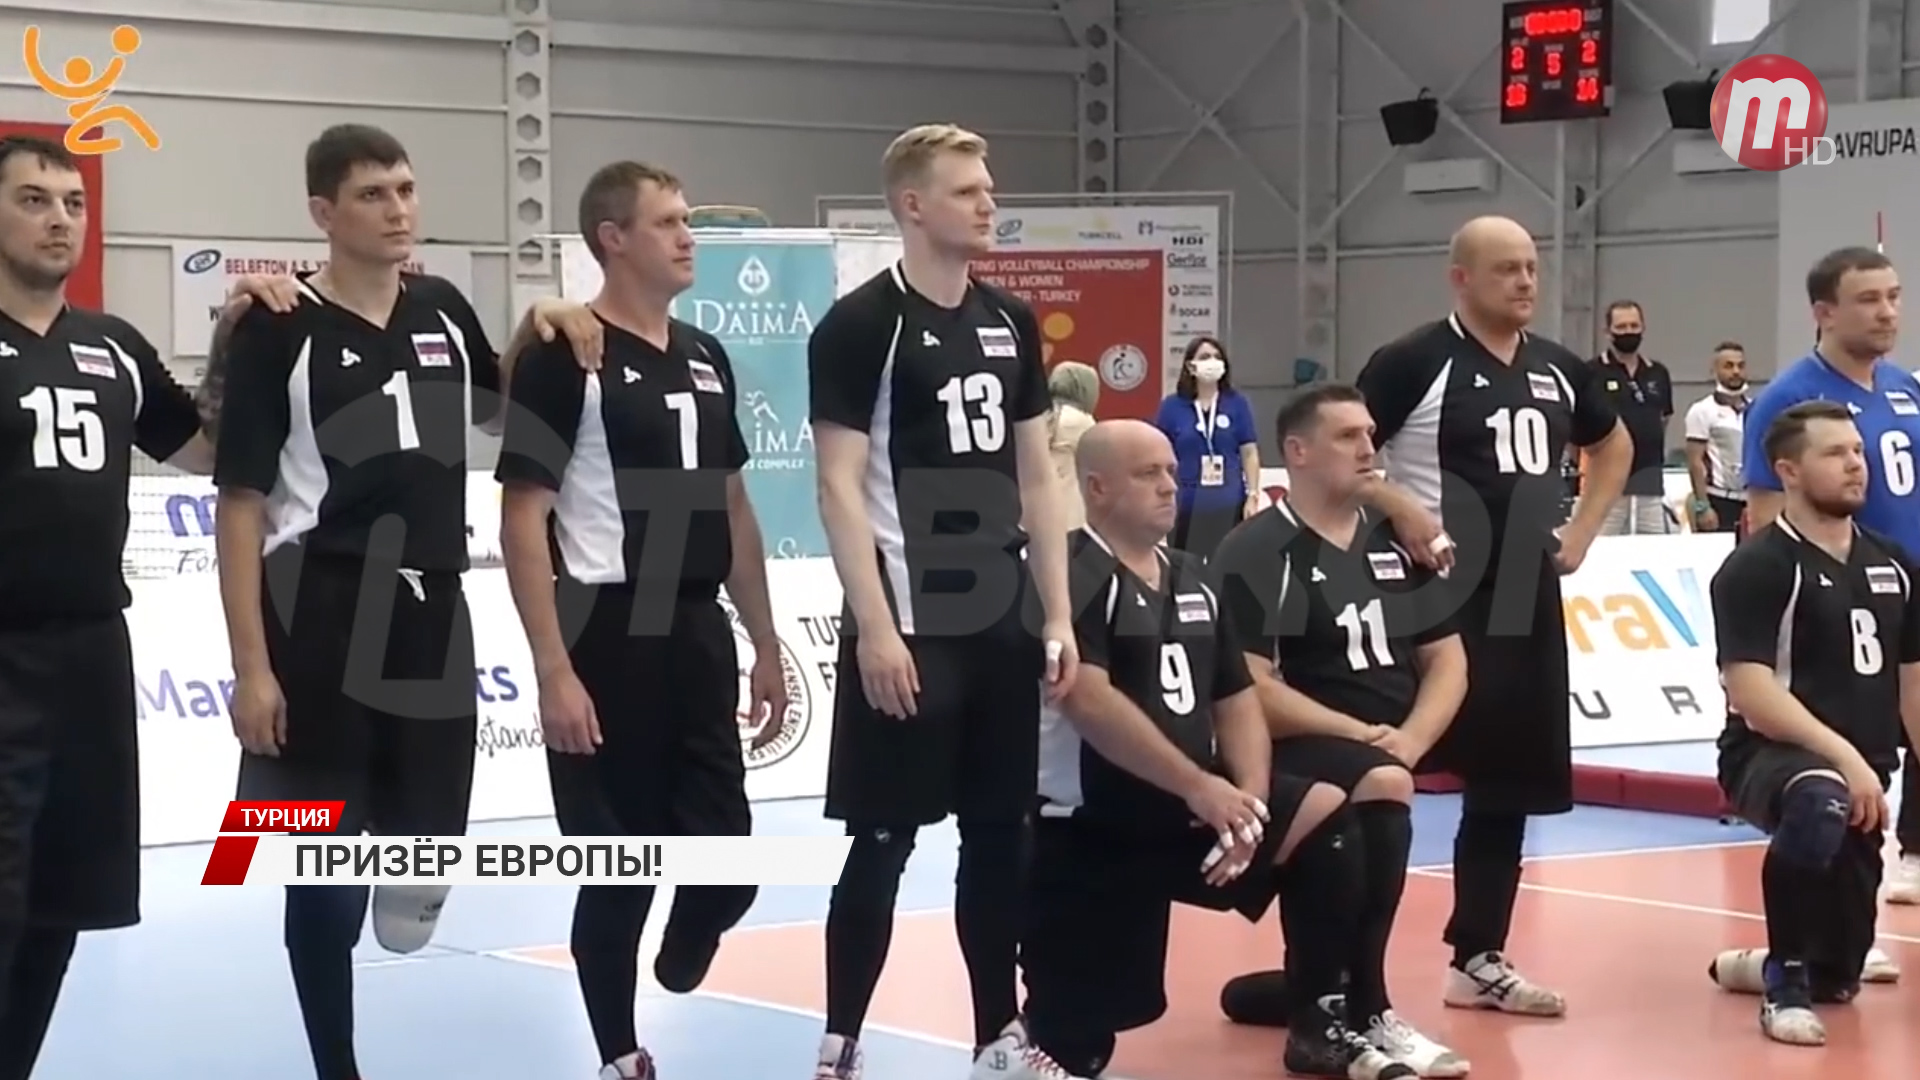 Призёра Чемпионата Европы по волейболу сидя Виталия Соболева чествовали в Министерстве спорта и молодежной политики Бурятии